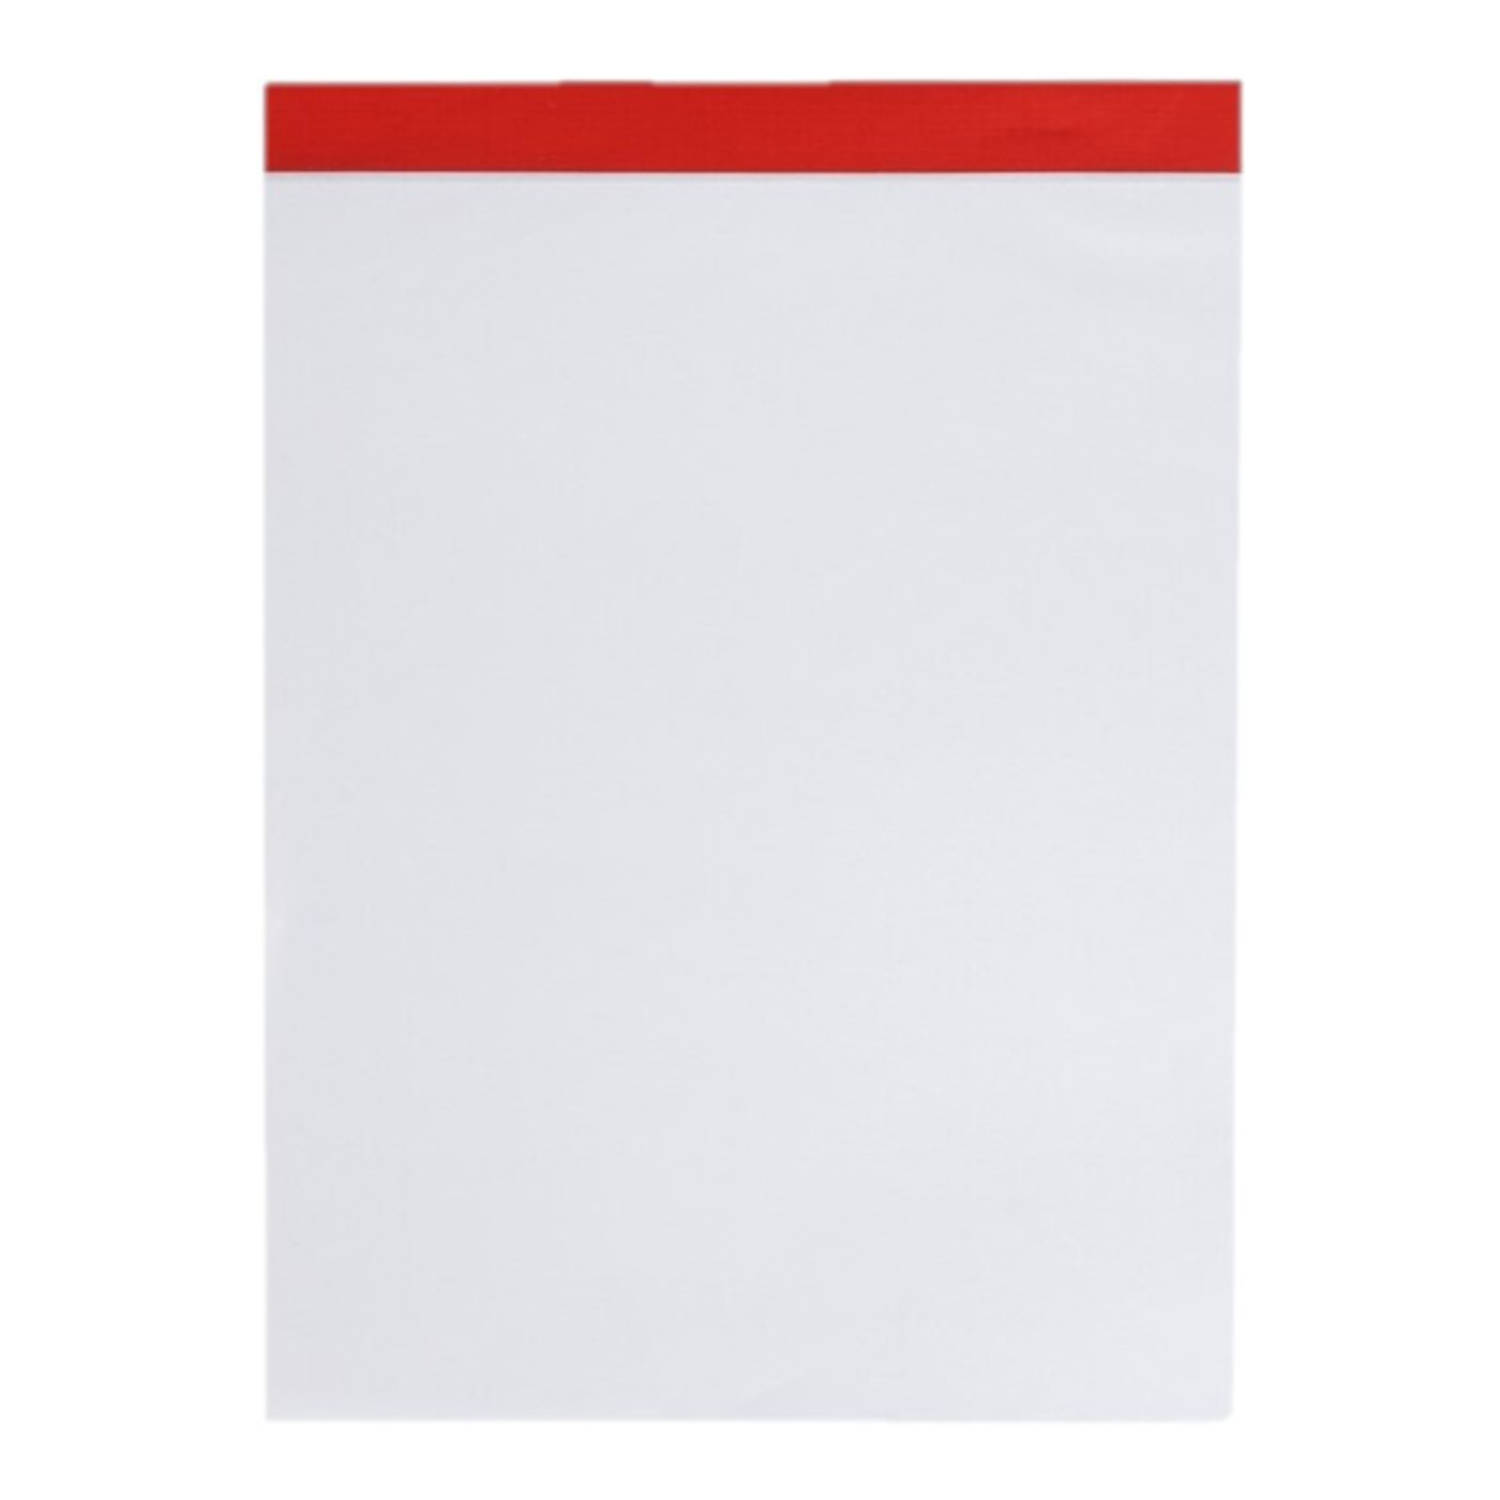 Set van 1x stuks notitieblokjes/opschrijfboekjes 21 x 15 cm 80 blanco paginas